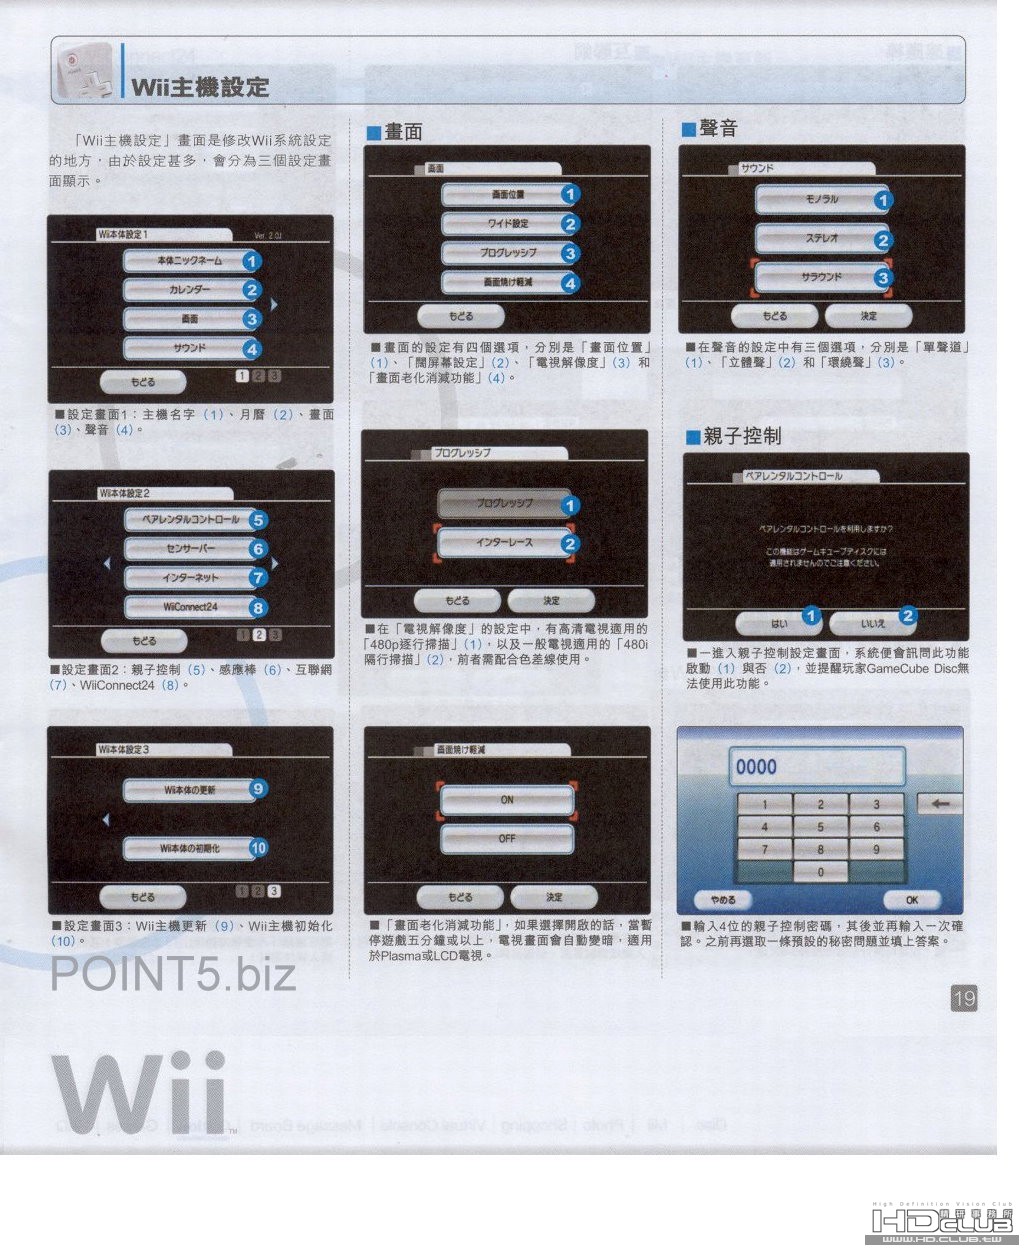 Wii-18.jpg